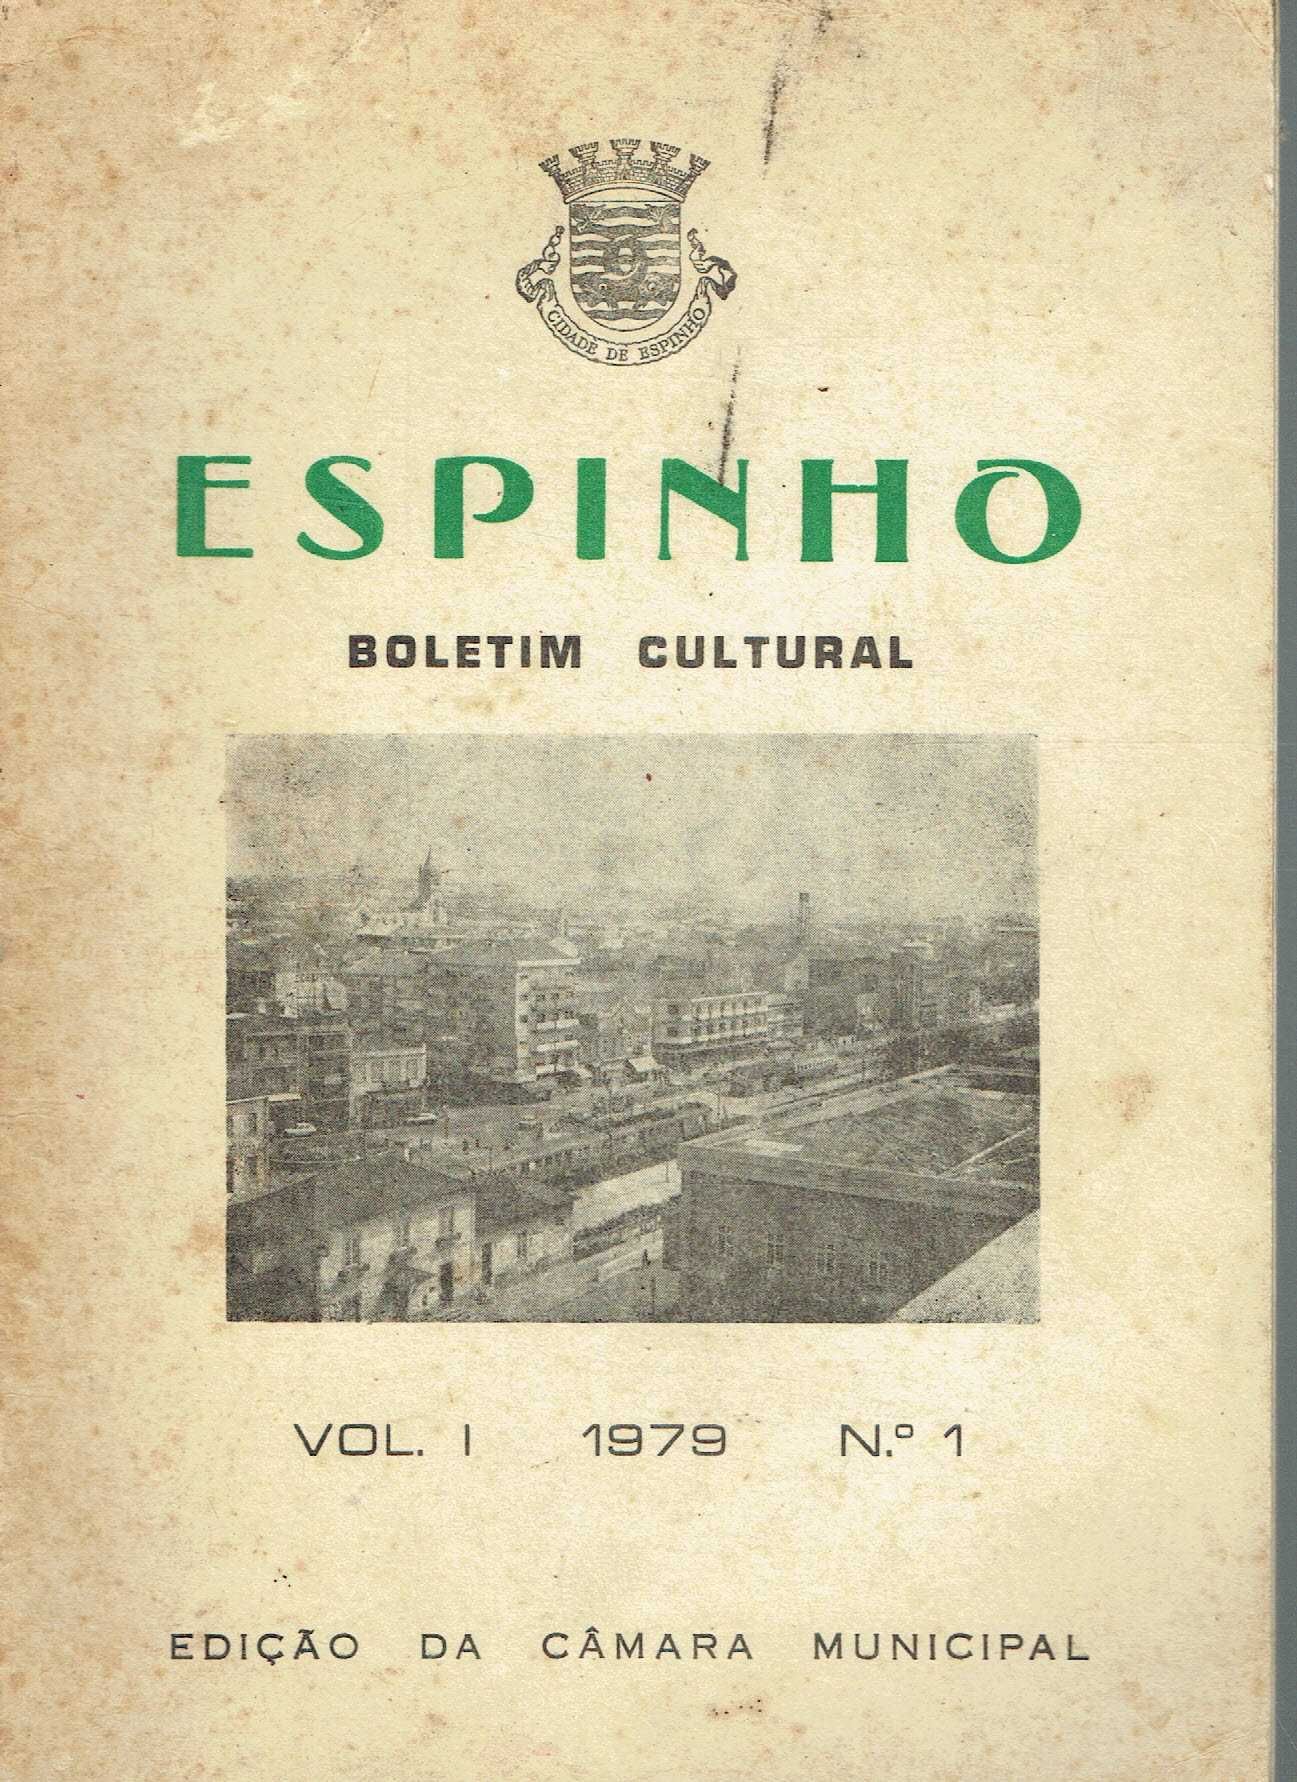 9251

Boletim Cultural de Espinho
Vol 1 - 1979 - Nº 1